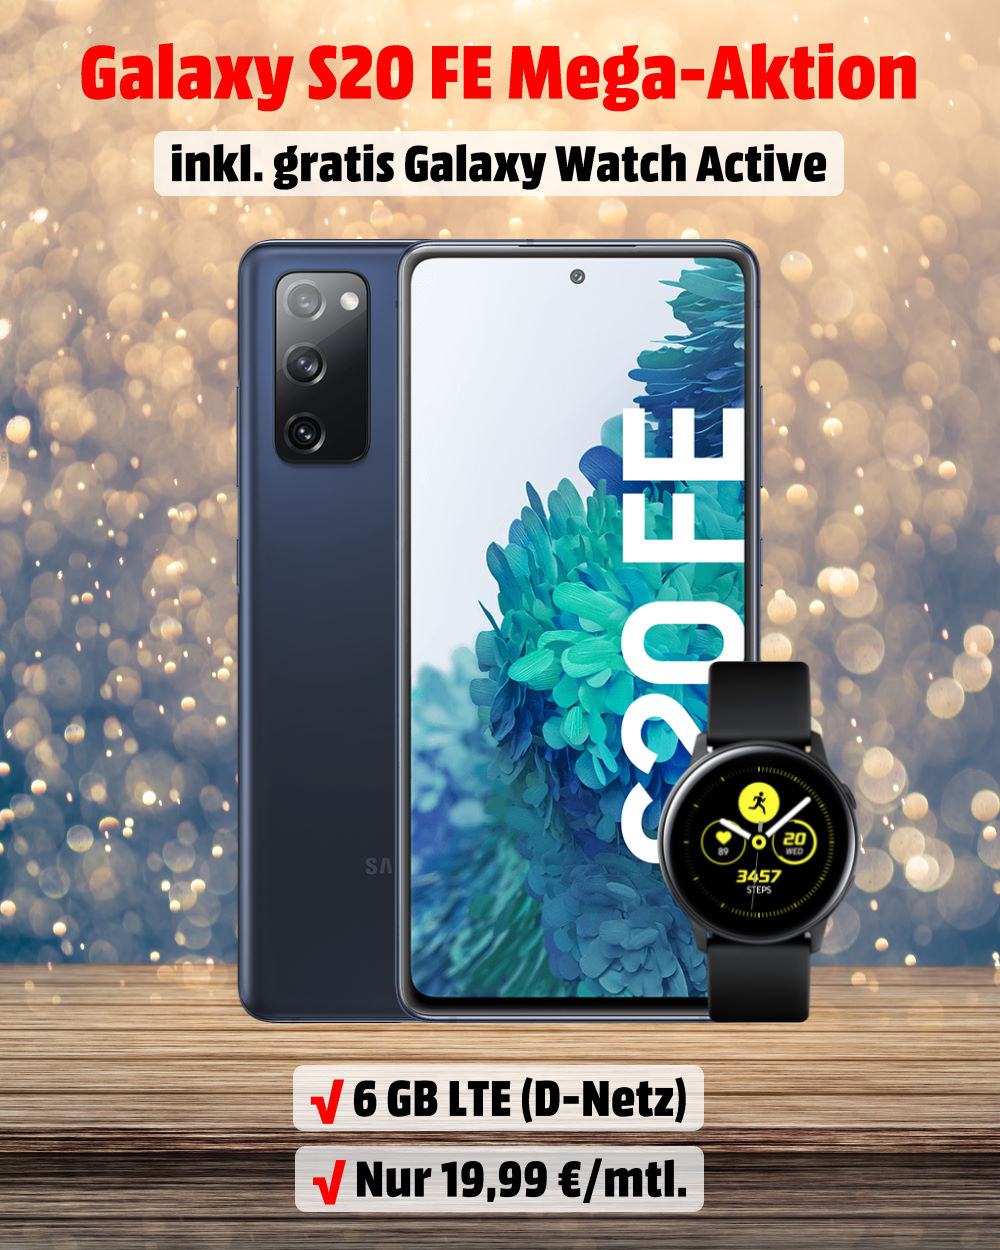 Galaxy S20 FE mit Galaxy Watch Active und 6 GB LTE Allnet-Flat Handy-Tarifvergleich